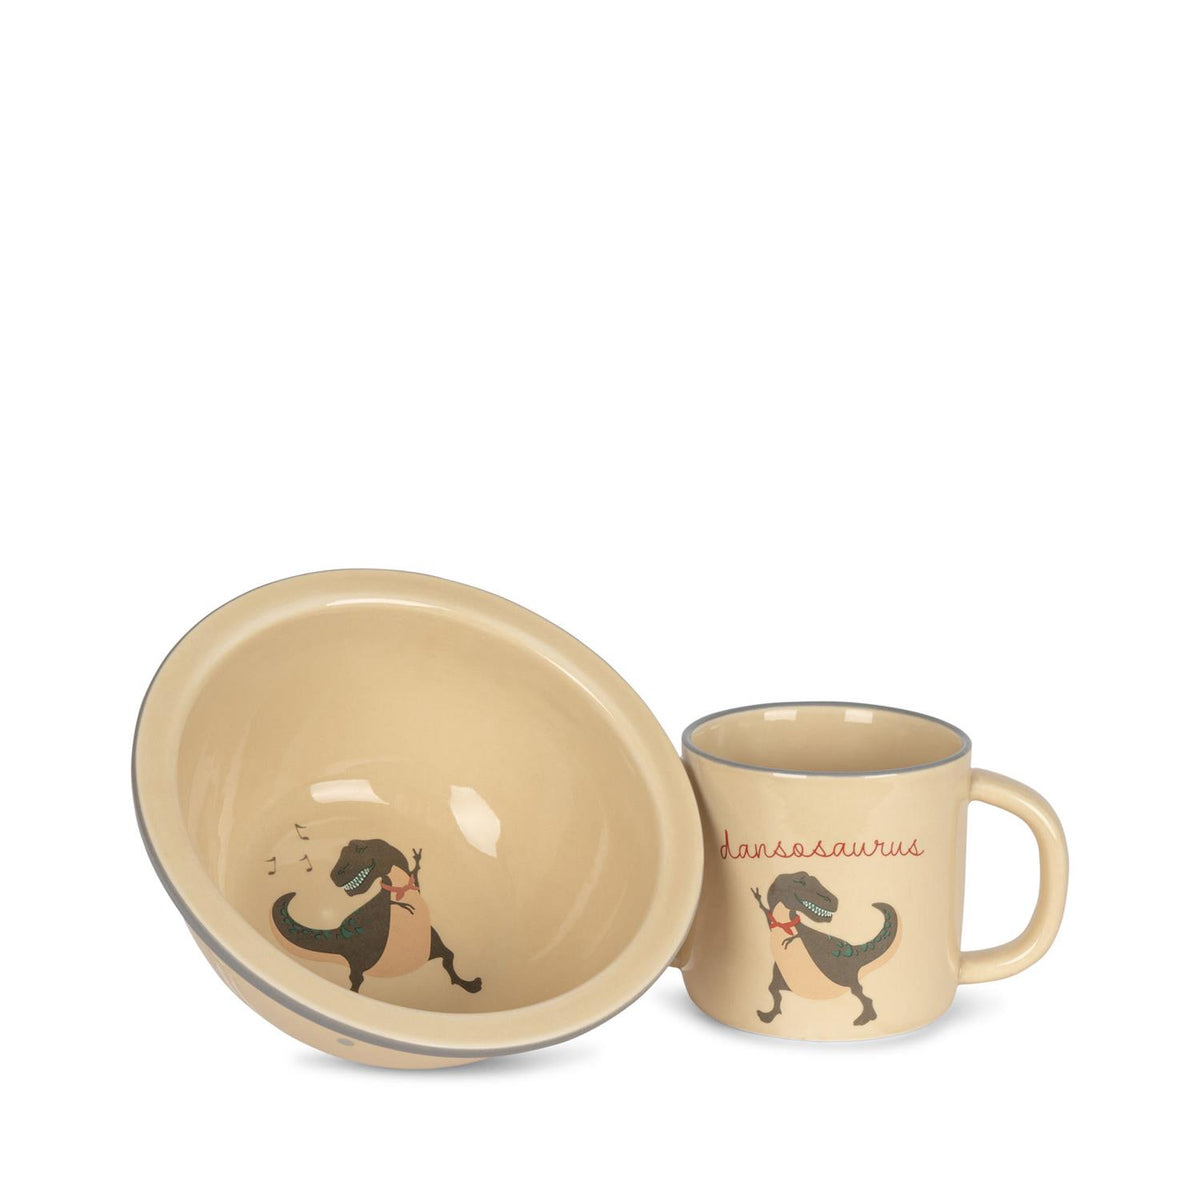 Sett Ceramic Bowl & Cup Dansosaurus